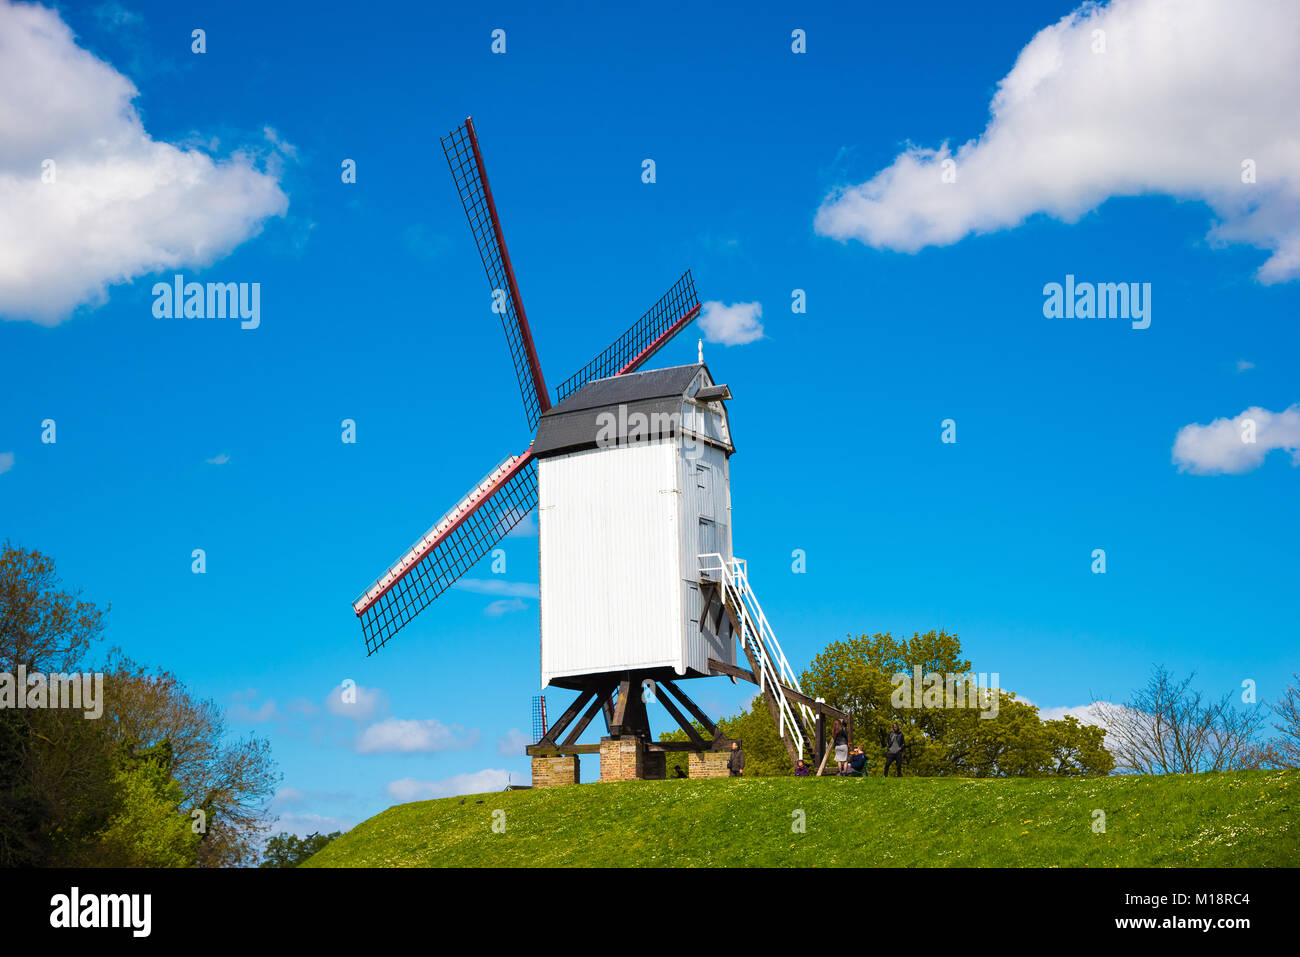 Brügge, Belgien - April 17, 2017: Windmühle in Brügge, Nordeuropa, Belgien. Historisches Gebäude für den Tourismus in der Stadt erhalten, entlang des Kanals Stockfoto